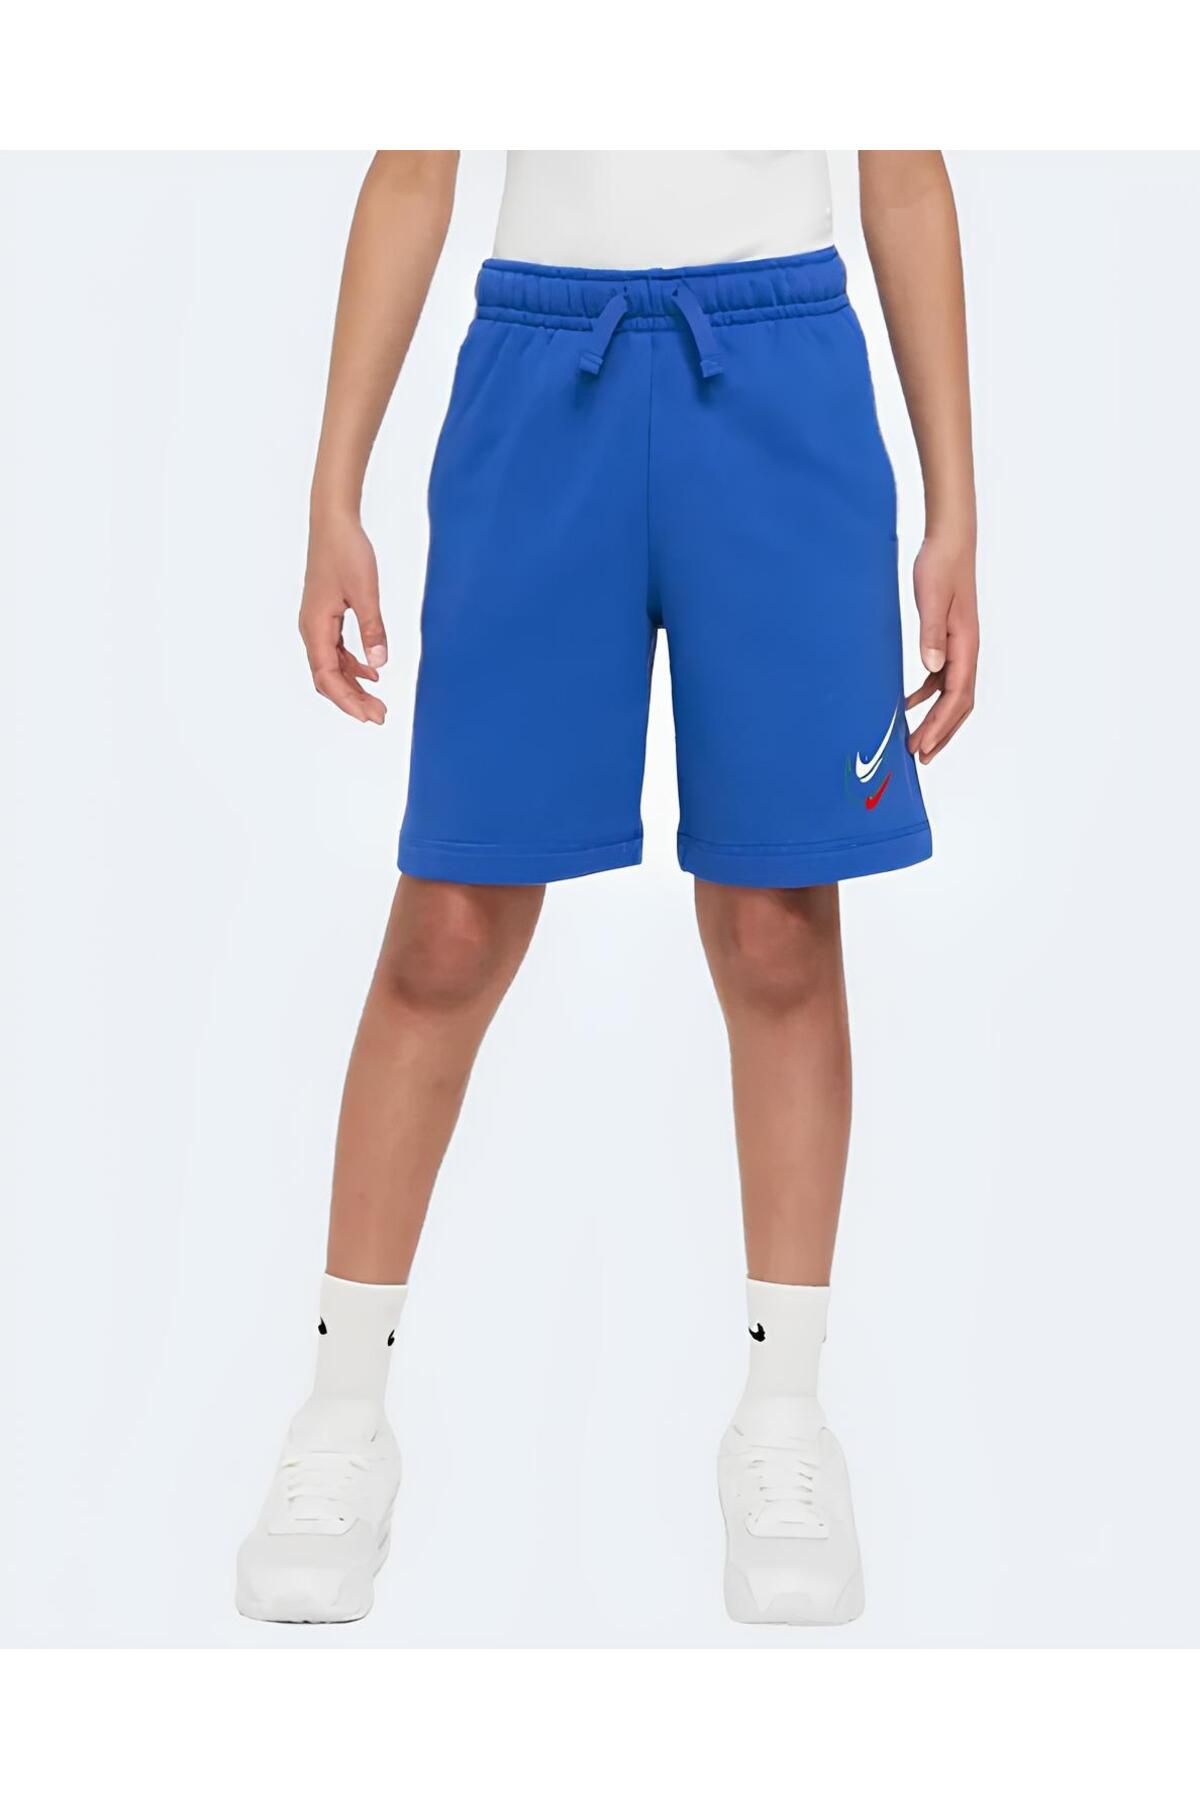 Nike sportswear erkek çocuk mavi pamuklu cepli şort dx2298